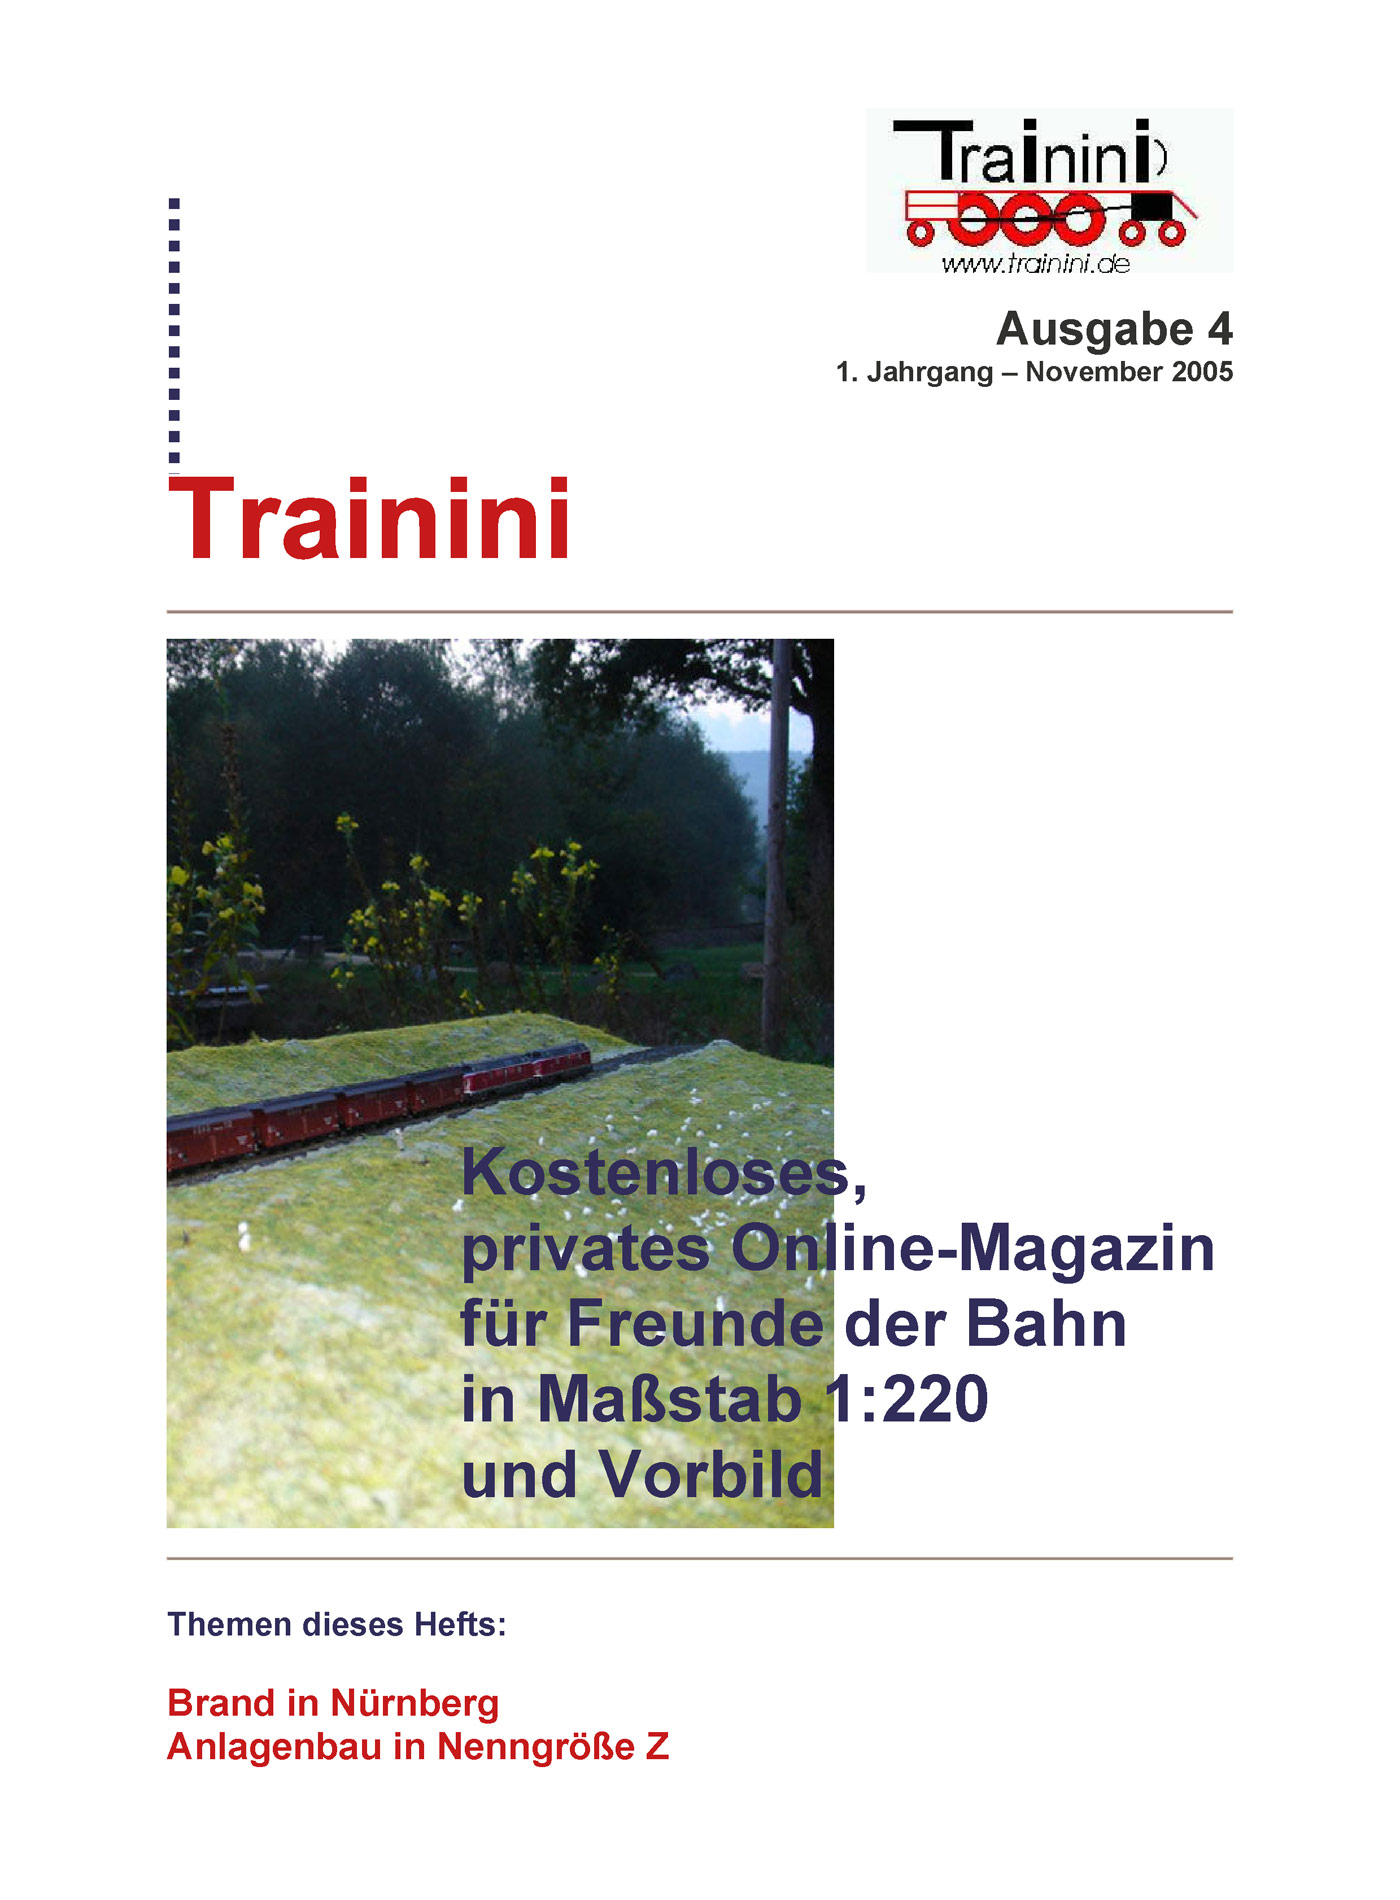 Trainini Ausgabe November 2005